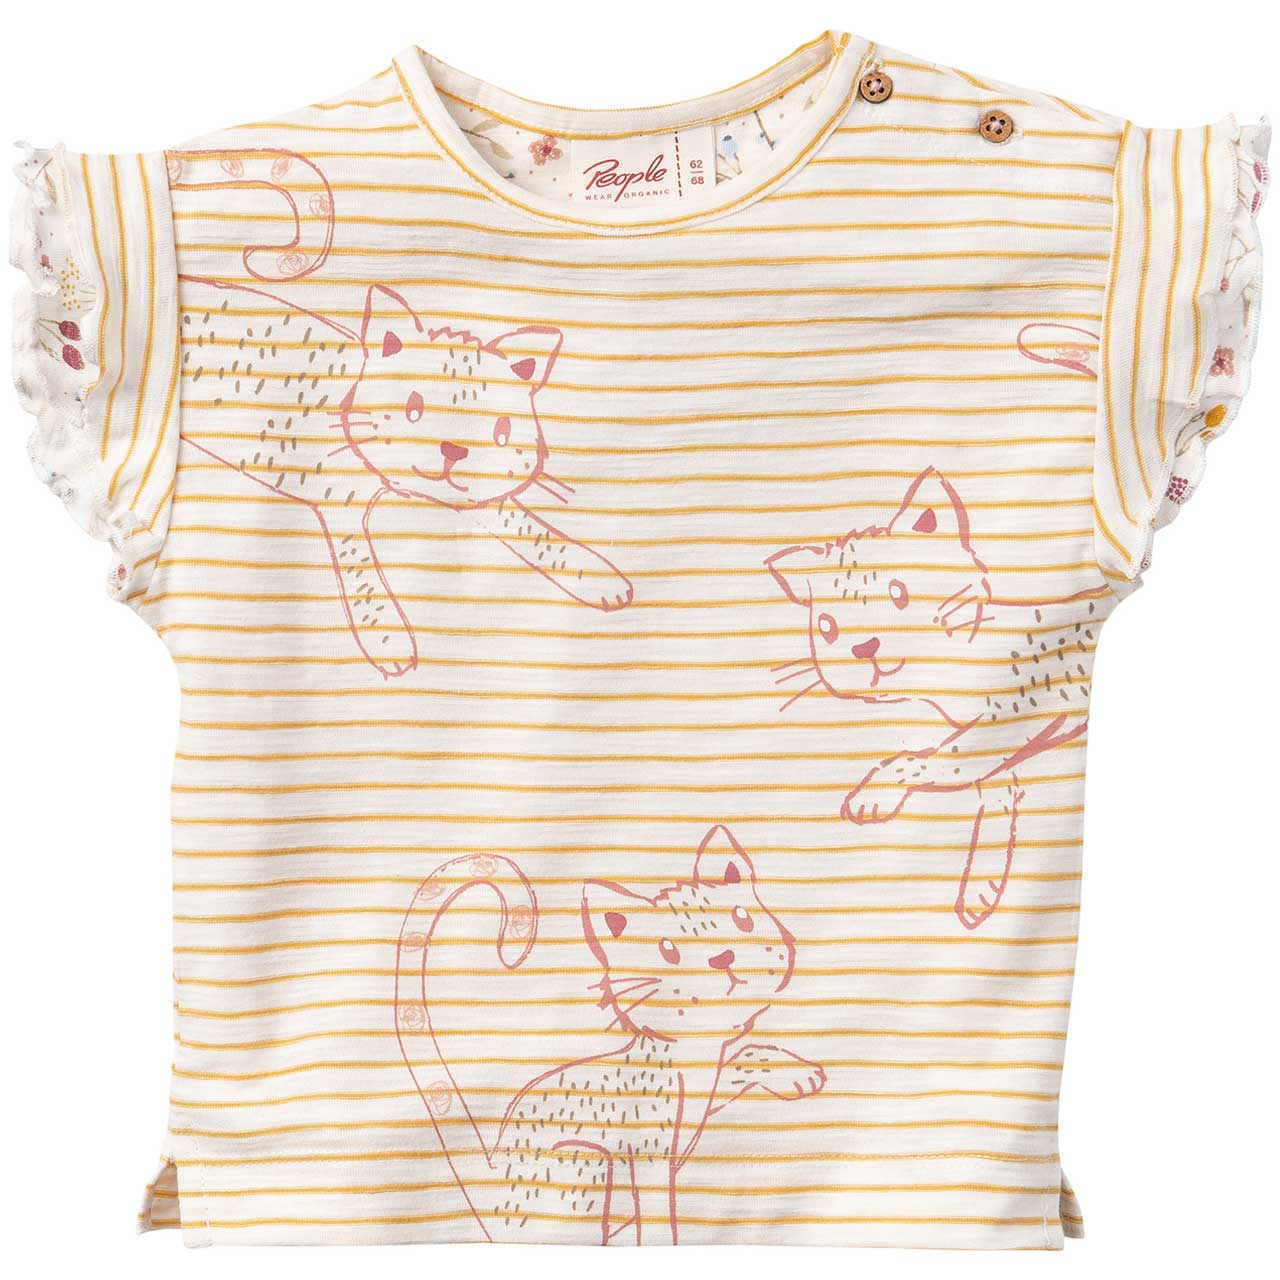 T-shirt Gattini per bambina in puro cotone biologico